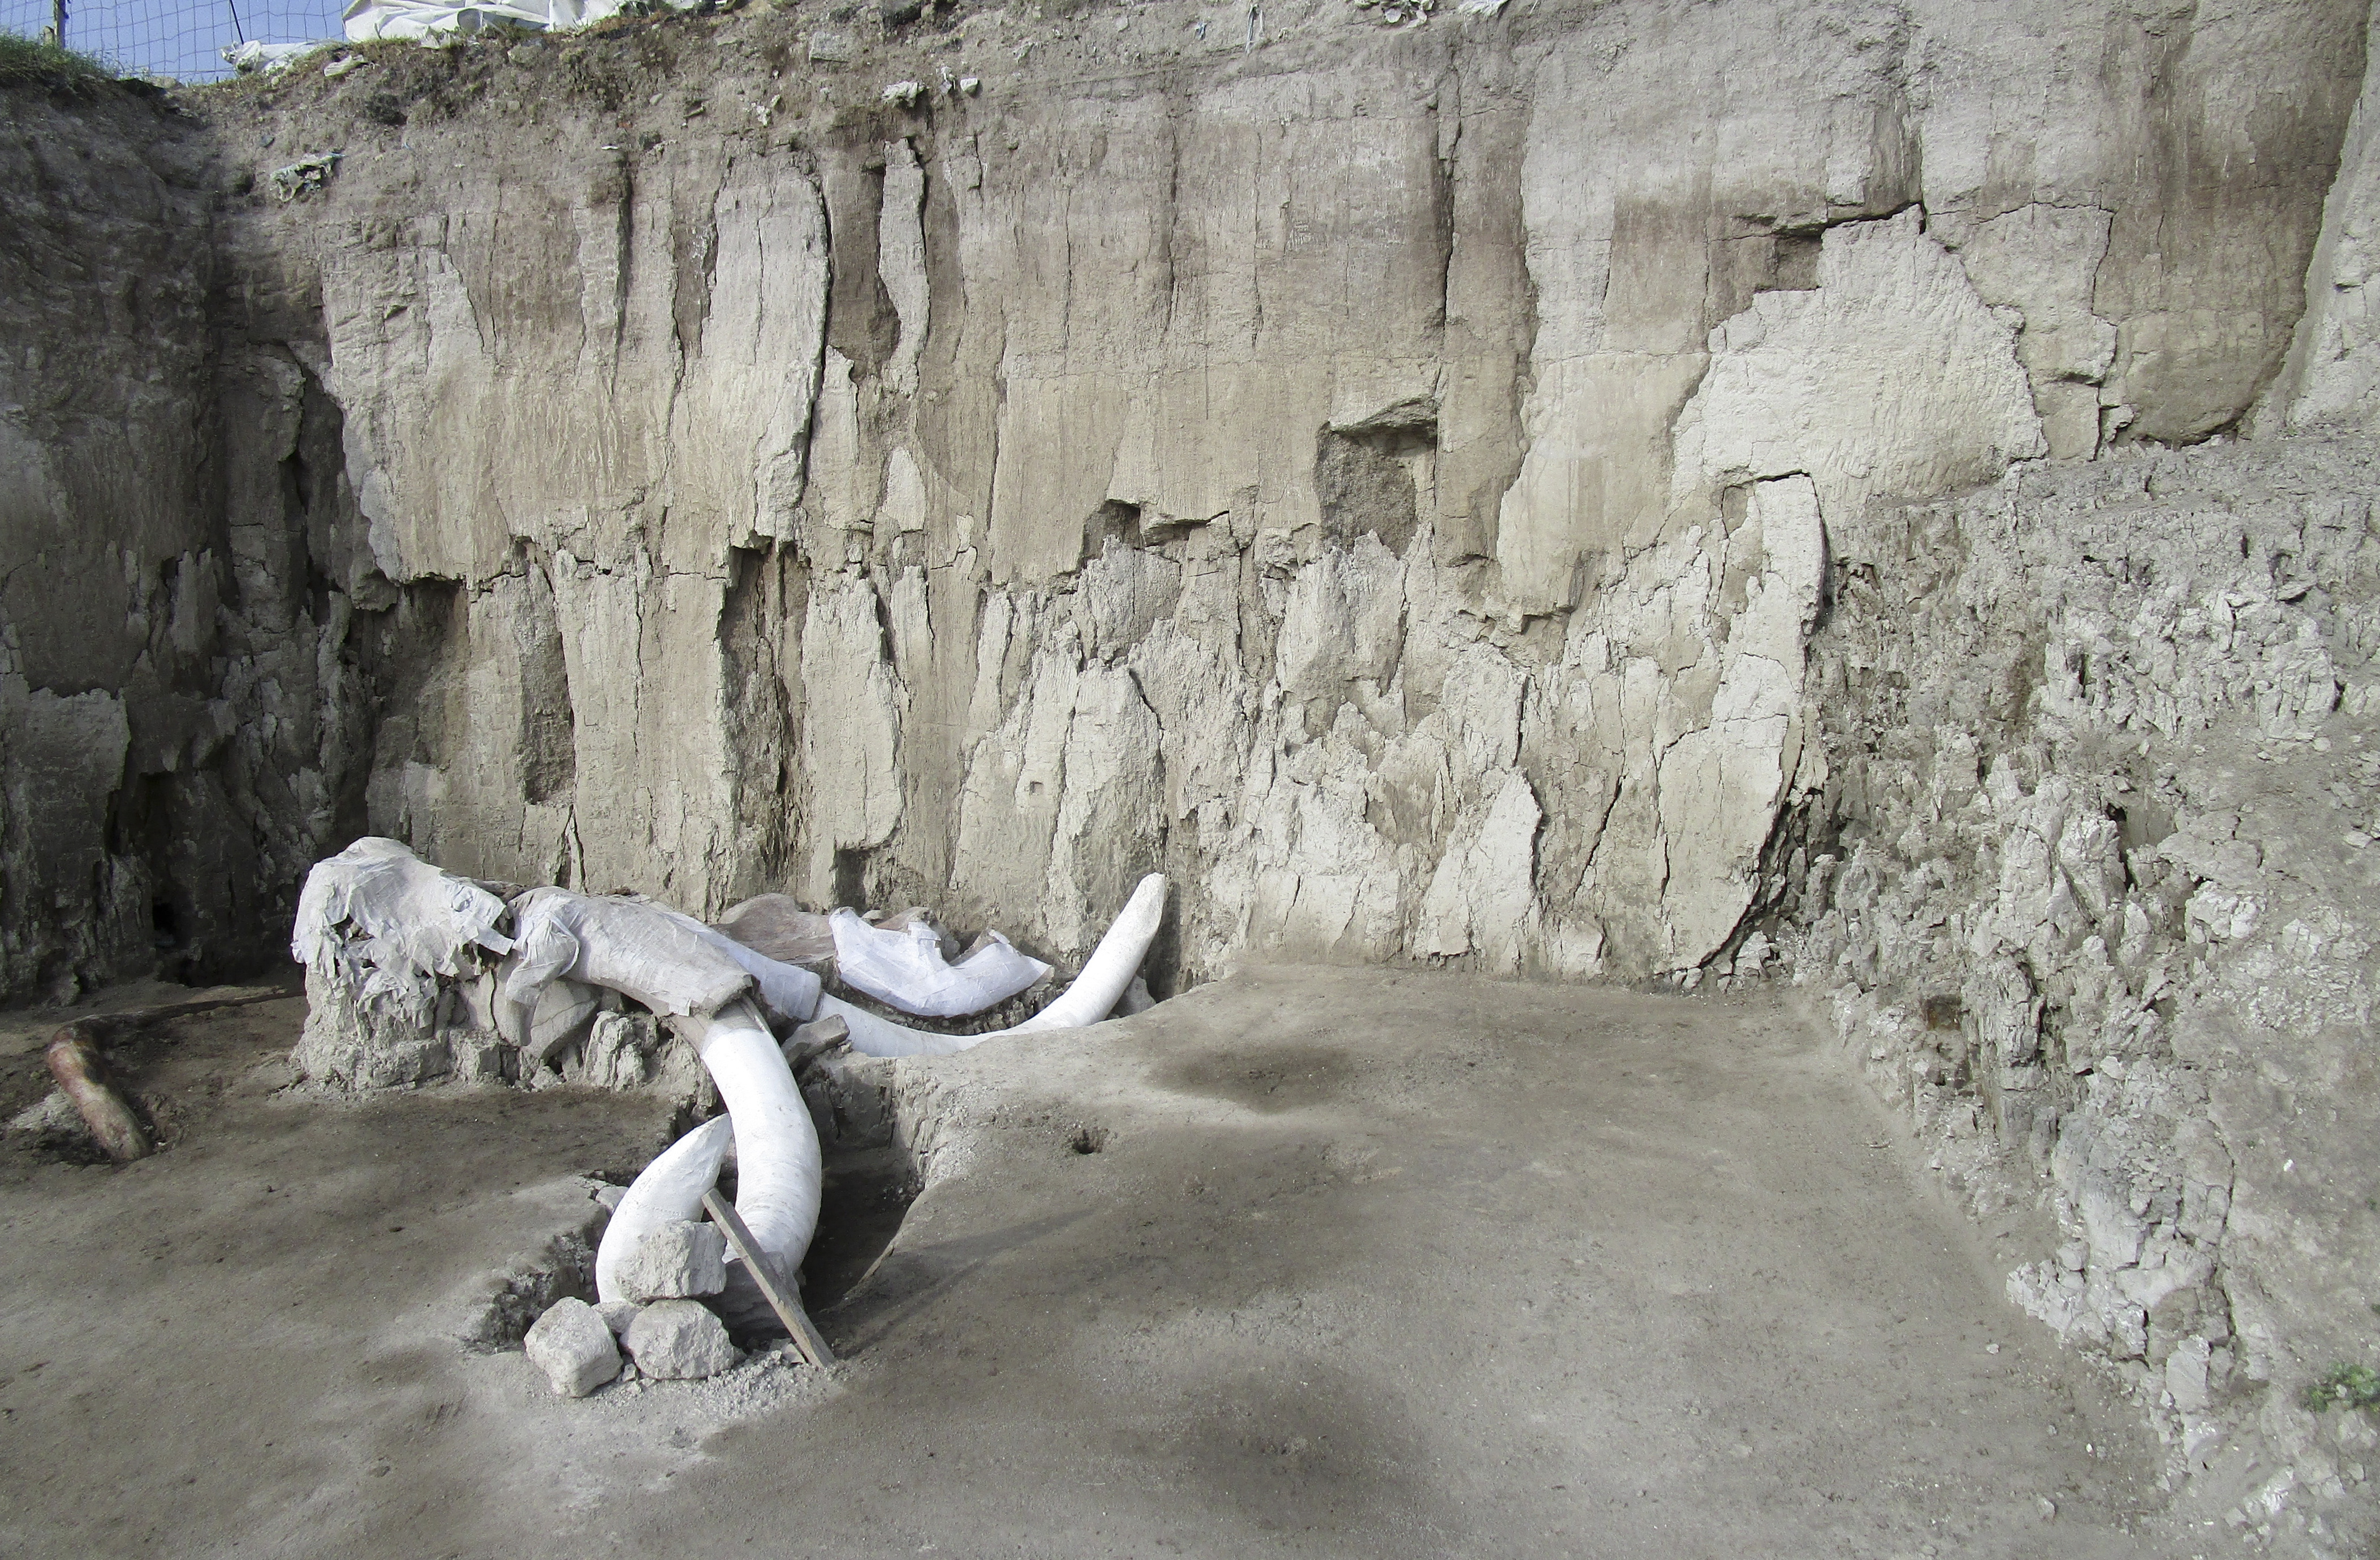 Na nedatovanej snímke sú mamutie kosti, ktoré našli počas vykopávok v okolí mesta Tultepec